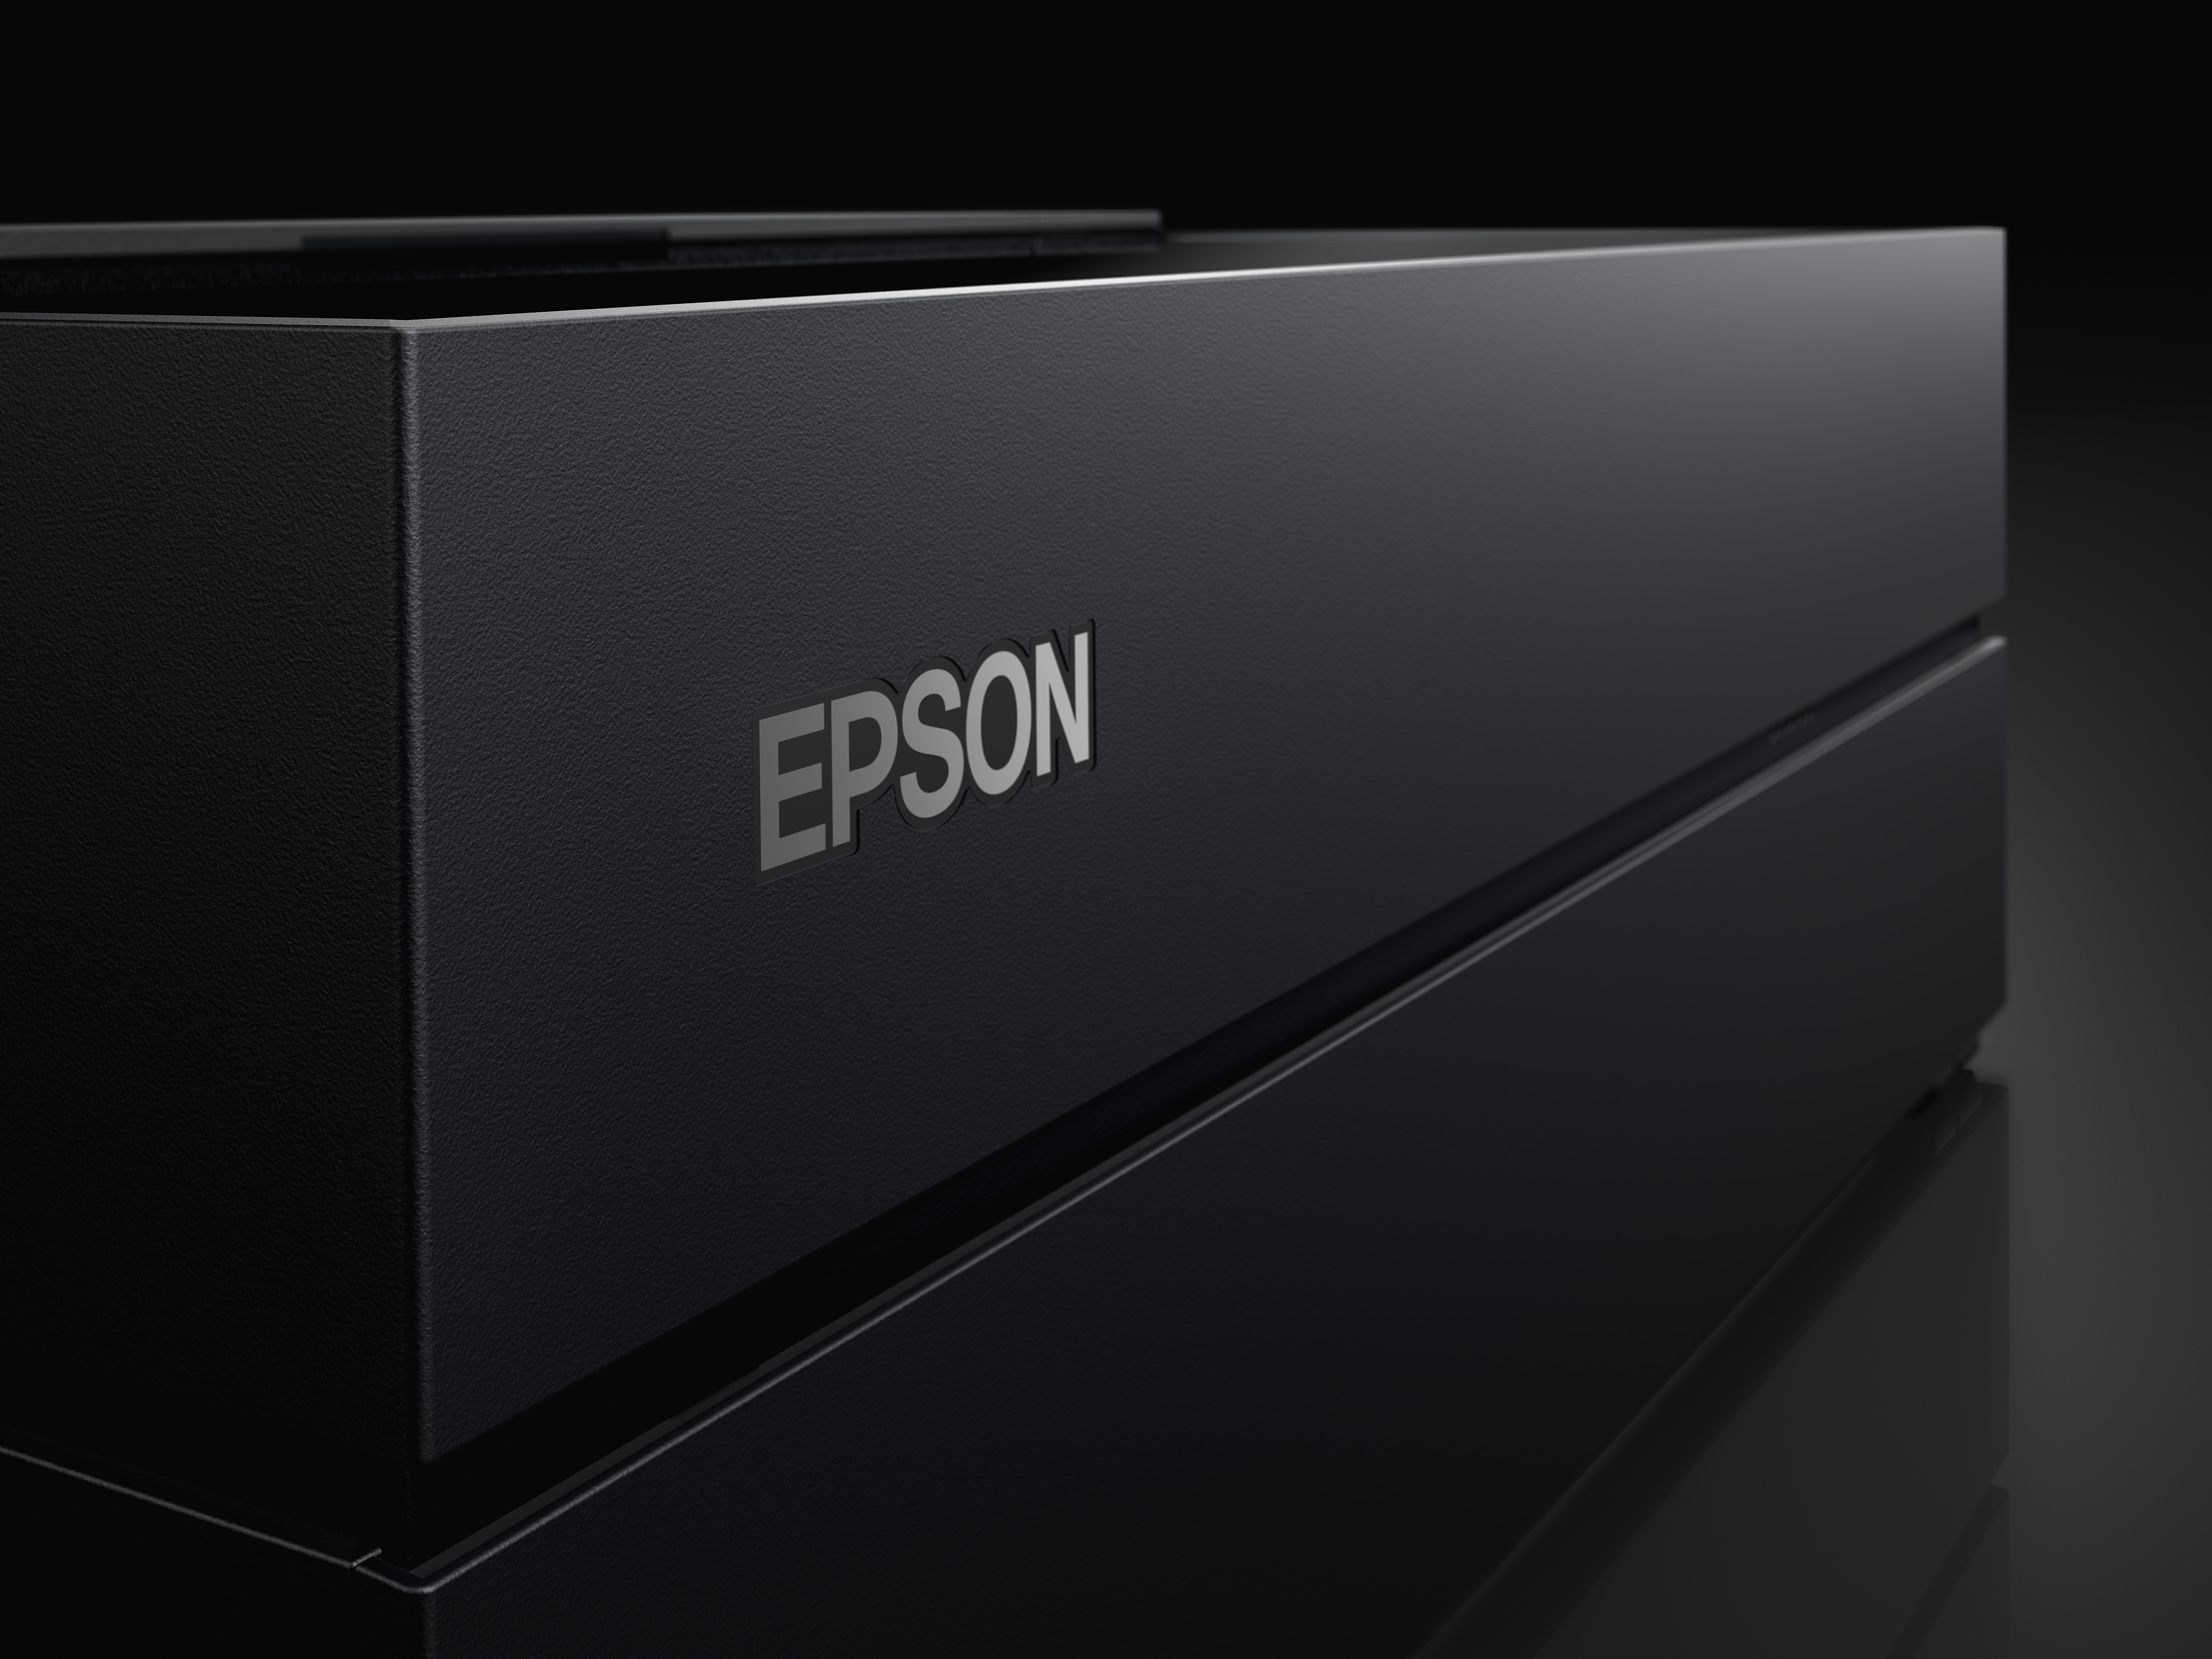 Epson Product Image